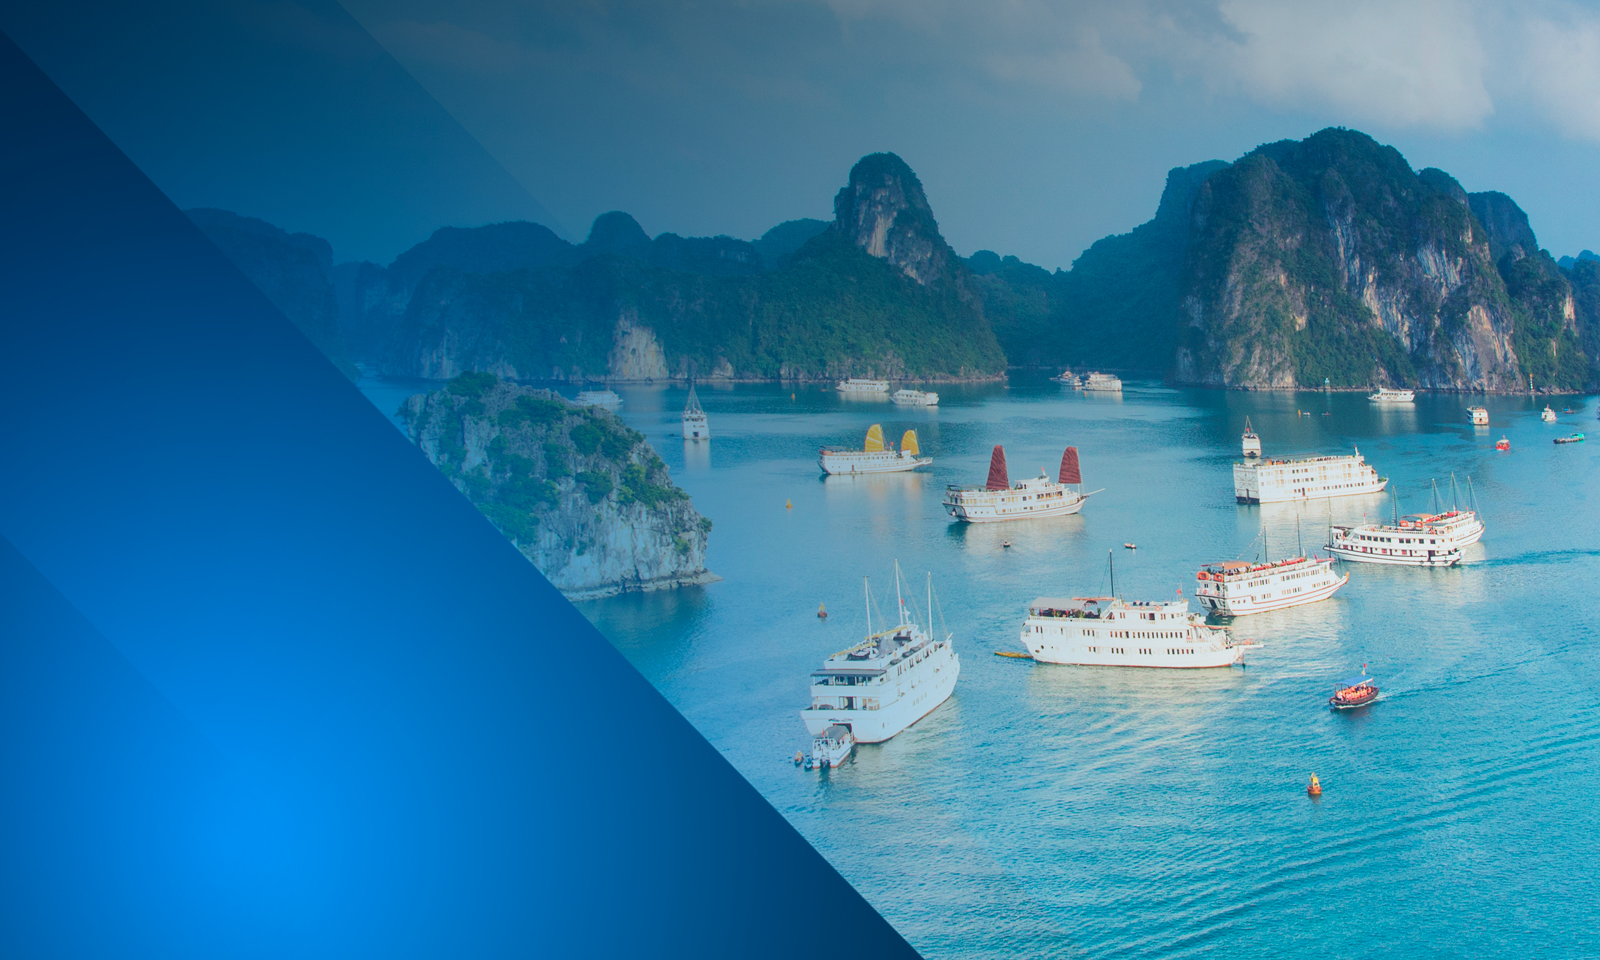 Image of Vietnam with boat on the water Fiera Capital célèbre le troisième anniversaire de sa stratégie sélective d’actions de marchés émergents Fiera OAKS